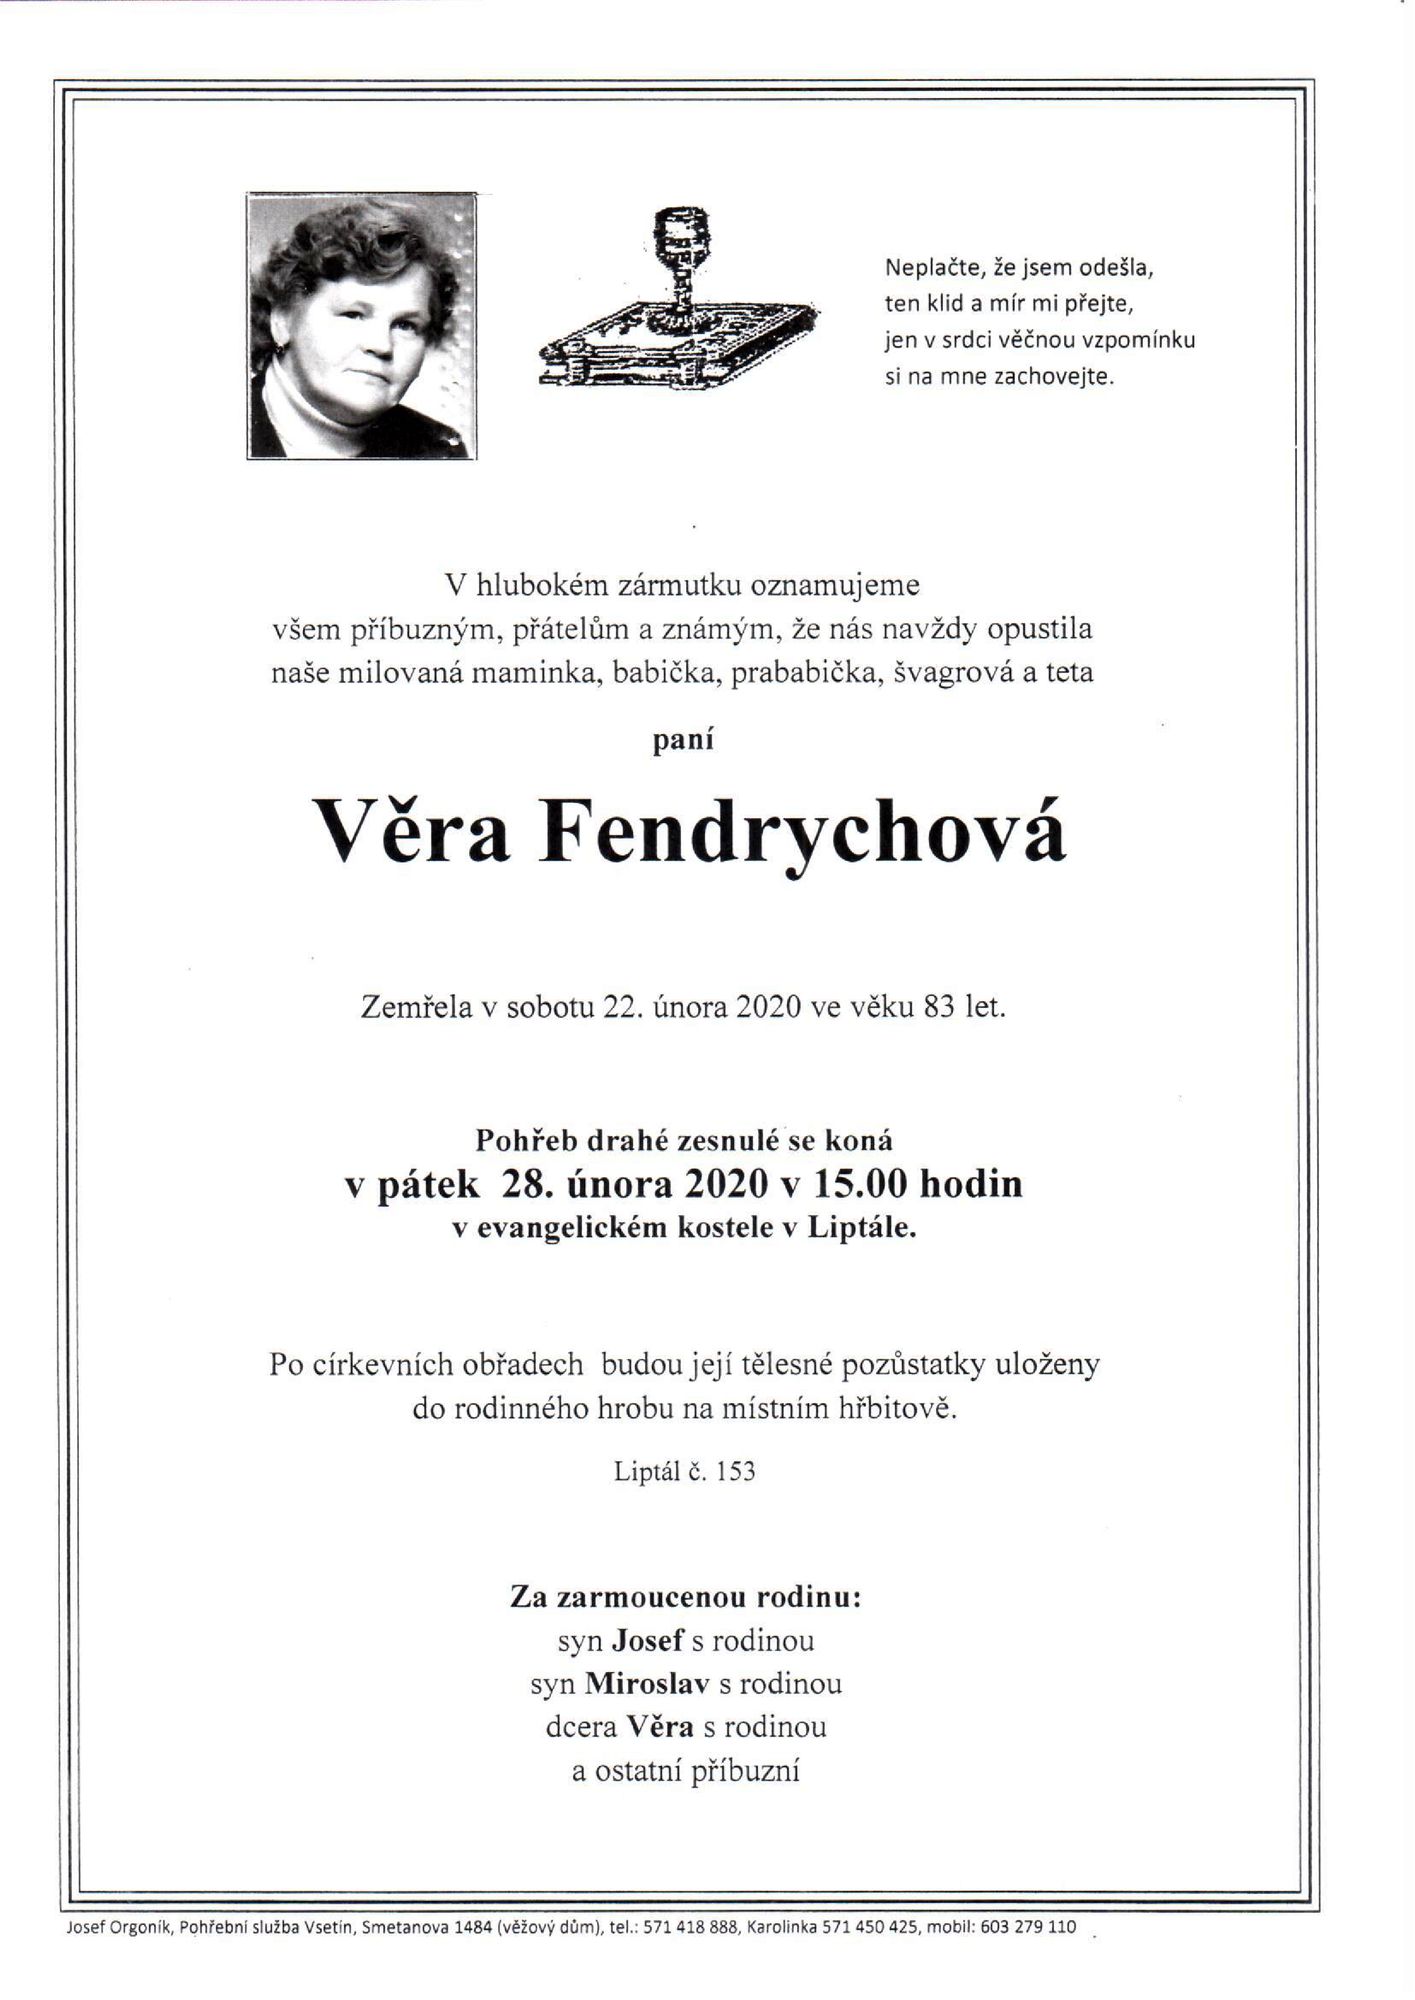 Věra Fendrychová